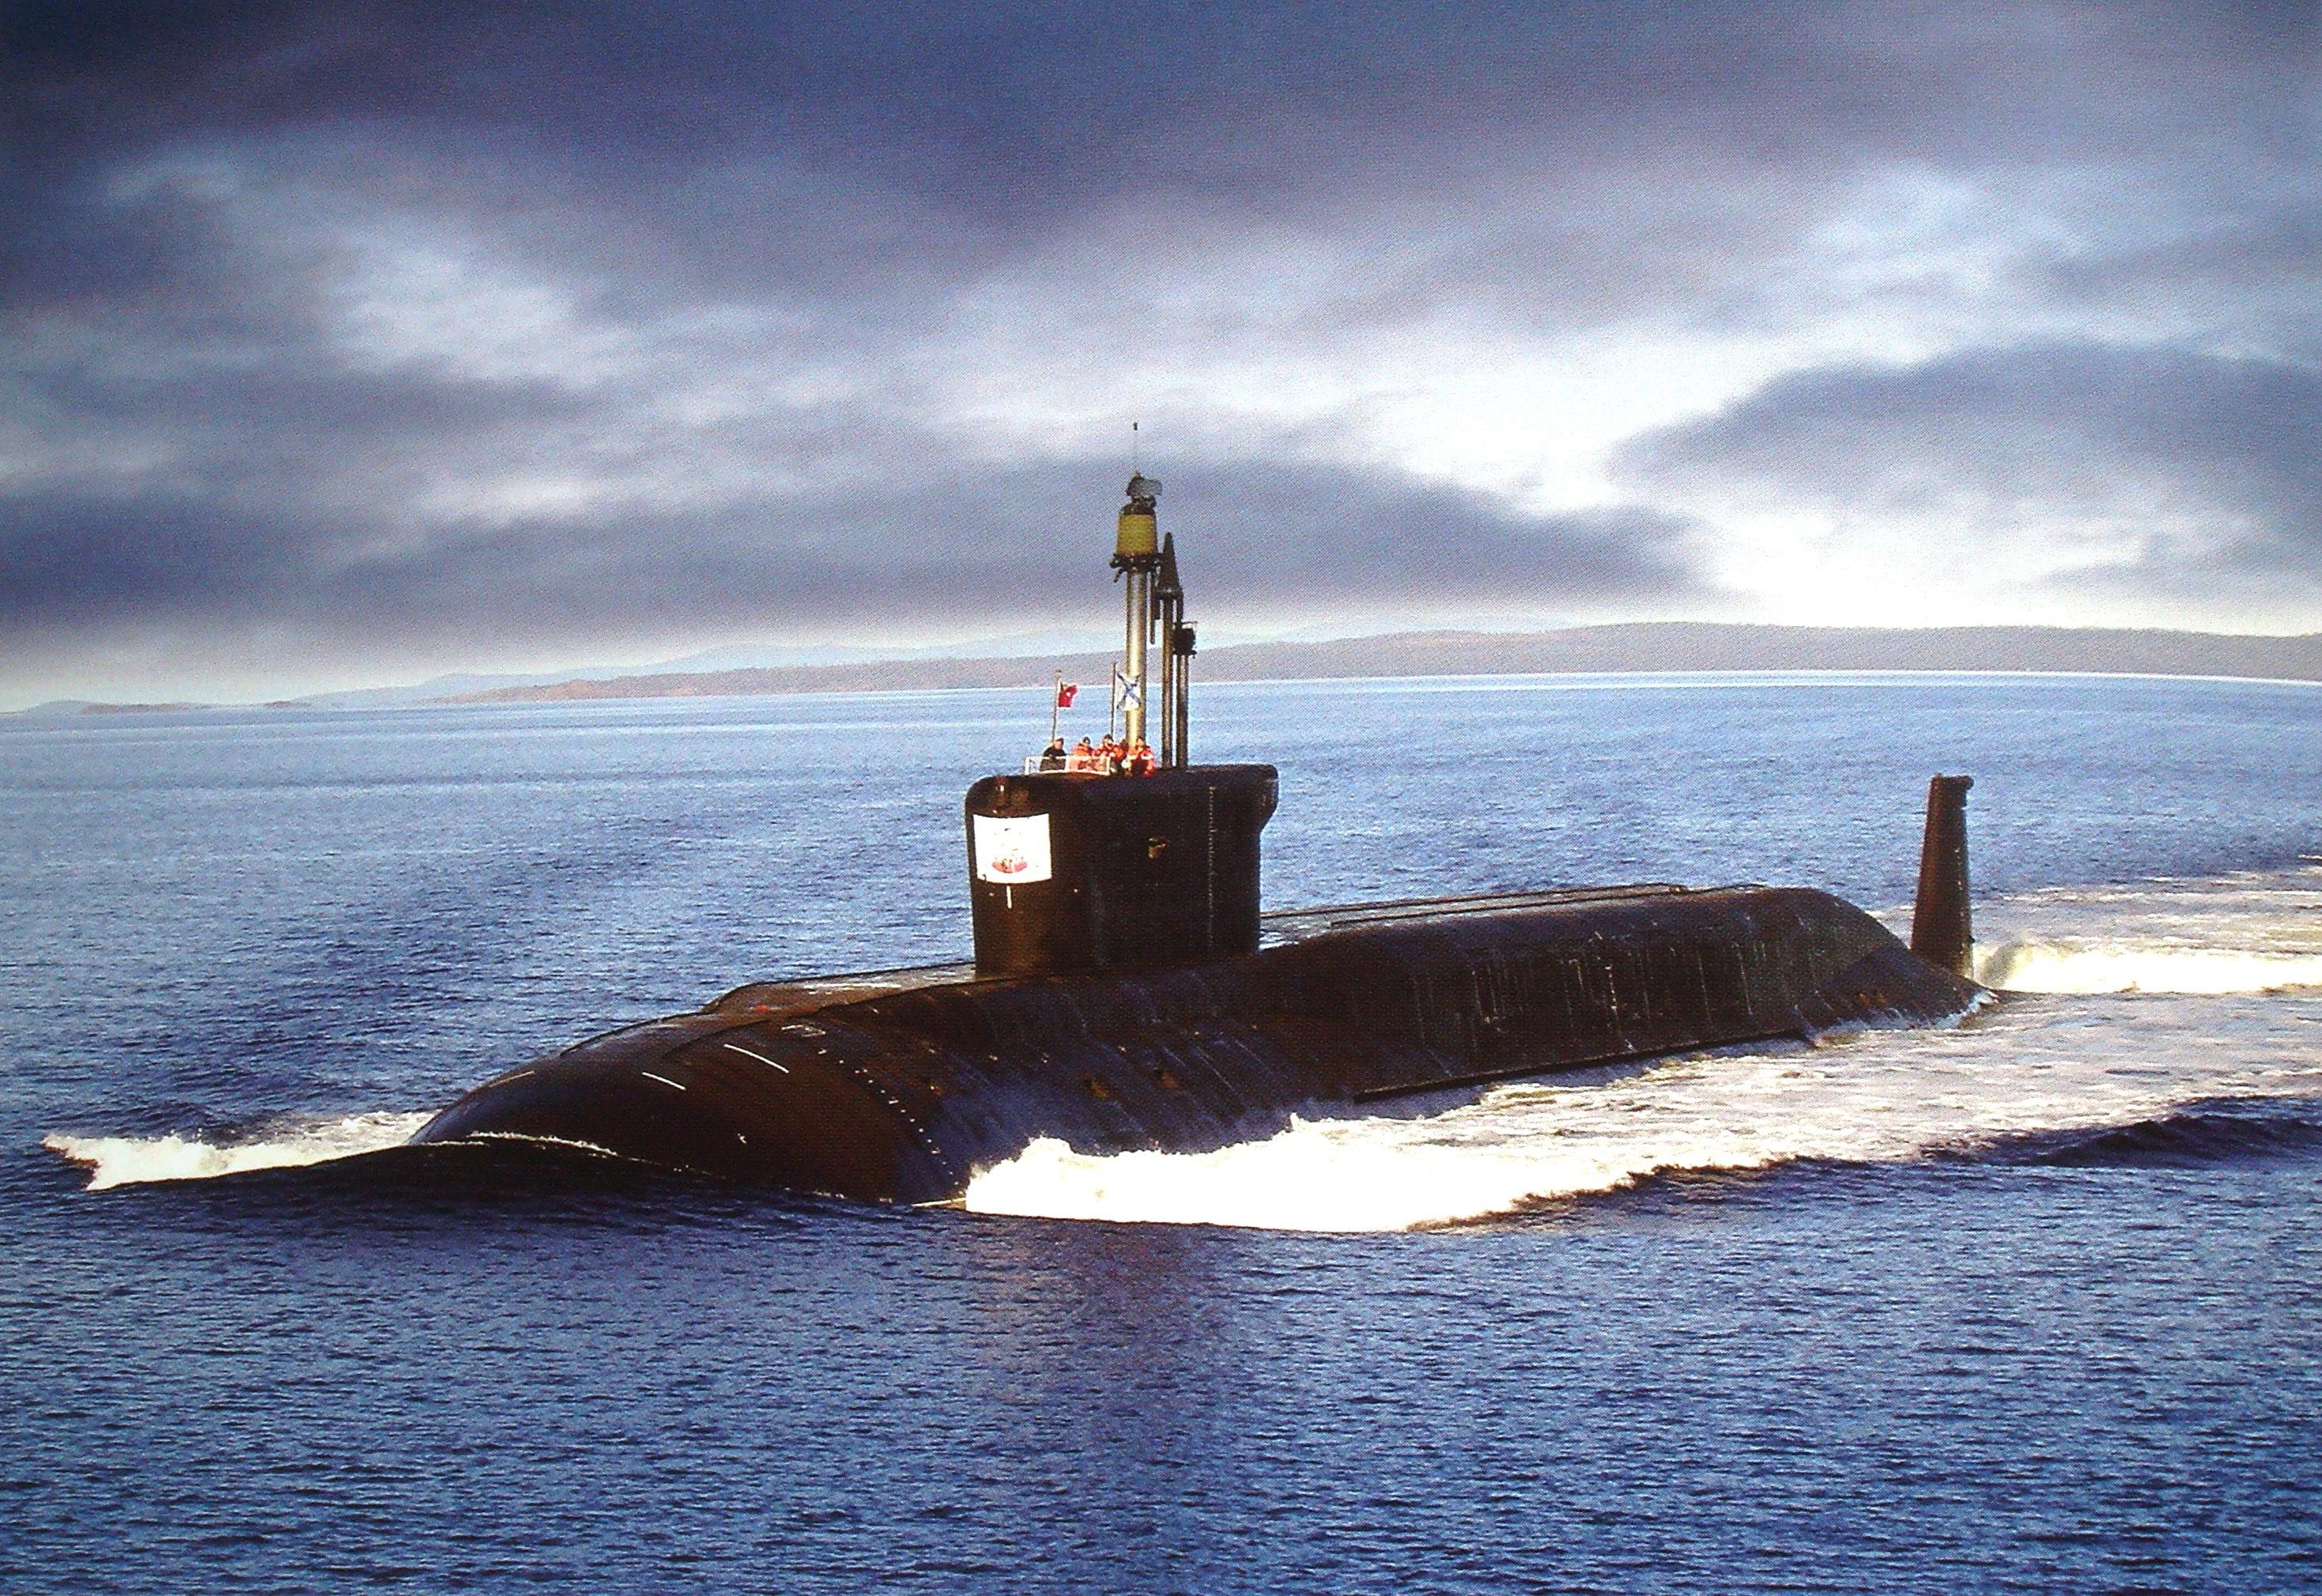 俄罗斯最强的战略核潜艇,装配16个弹道导弹,最远射程10000公里